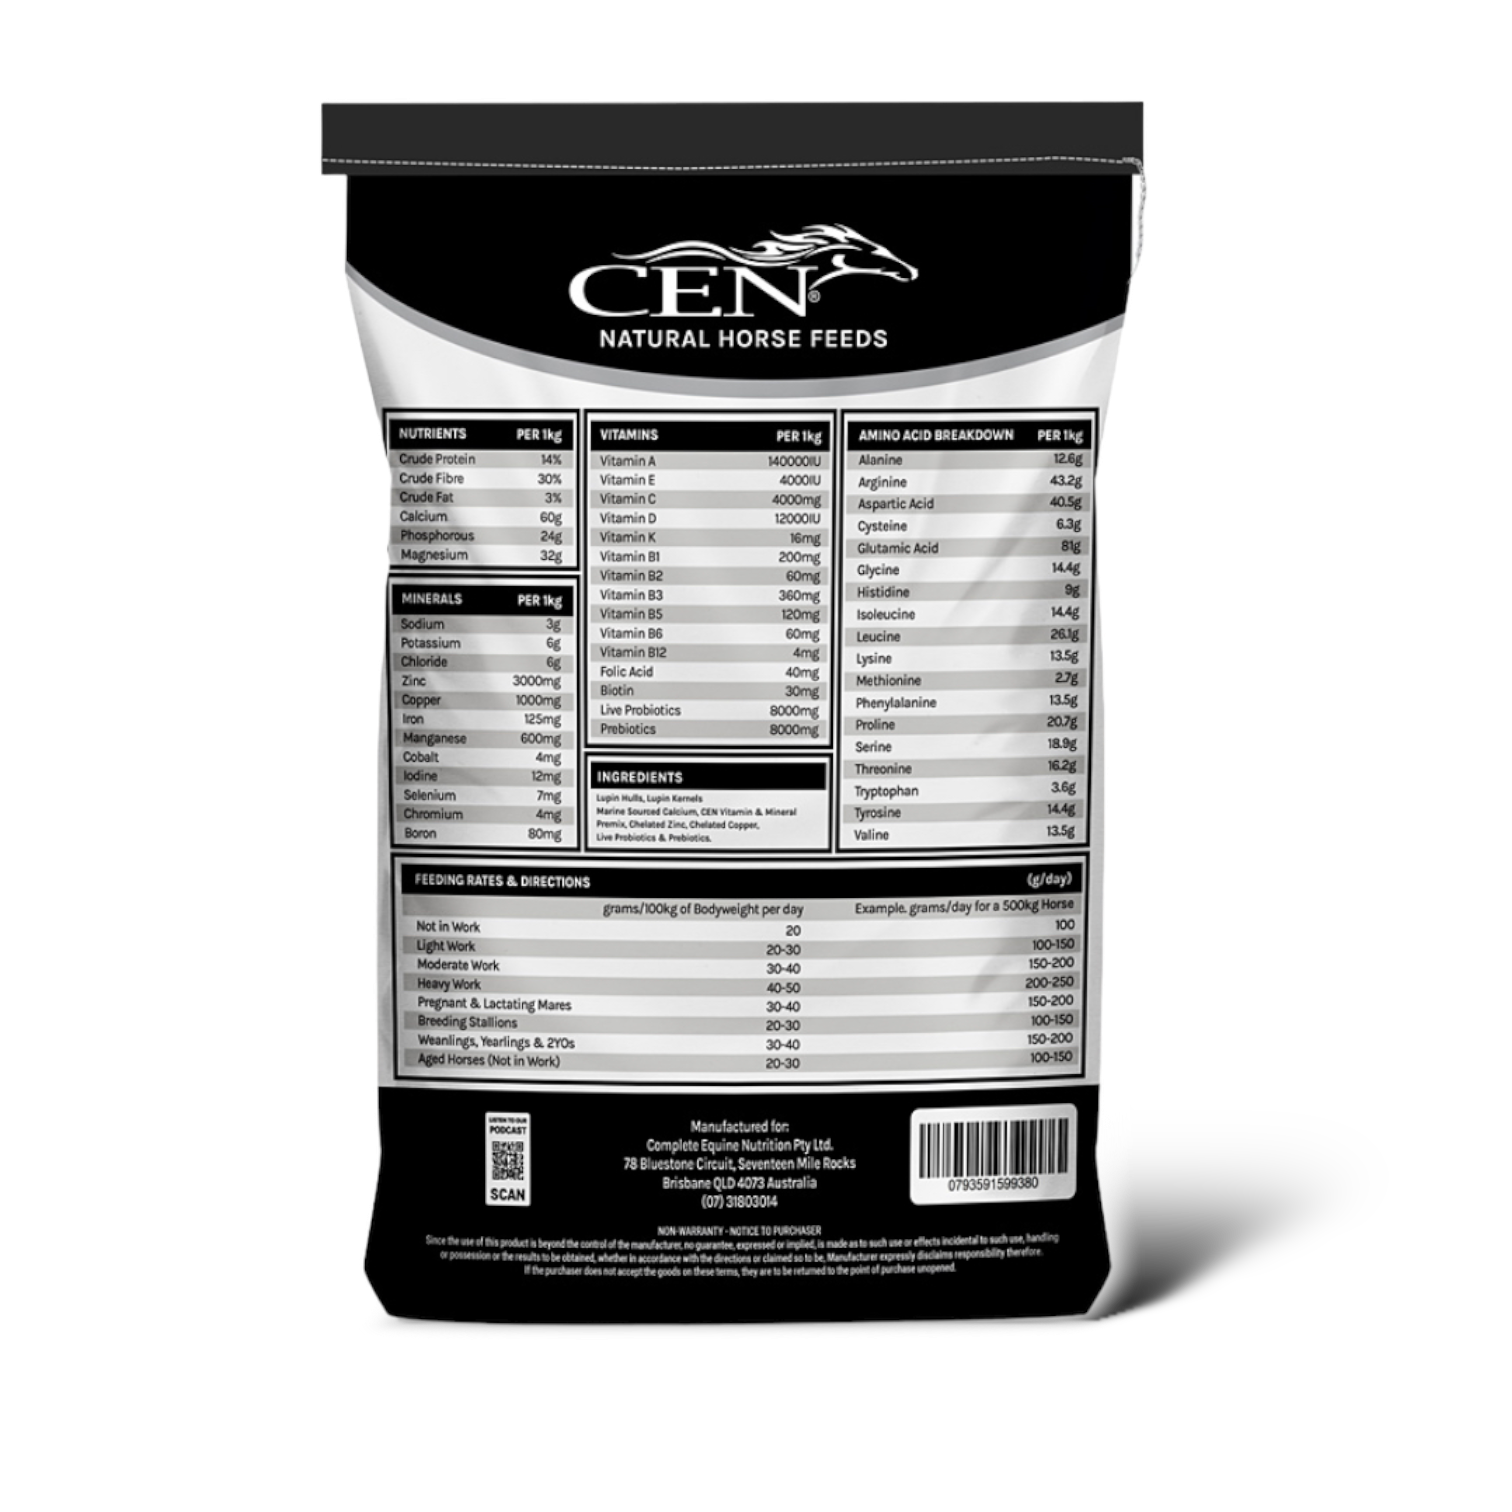 CEN CF50 Grain-Free Multivitamin & Mineral Pellet 6.5kg